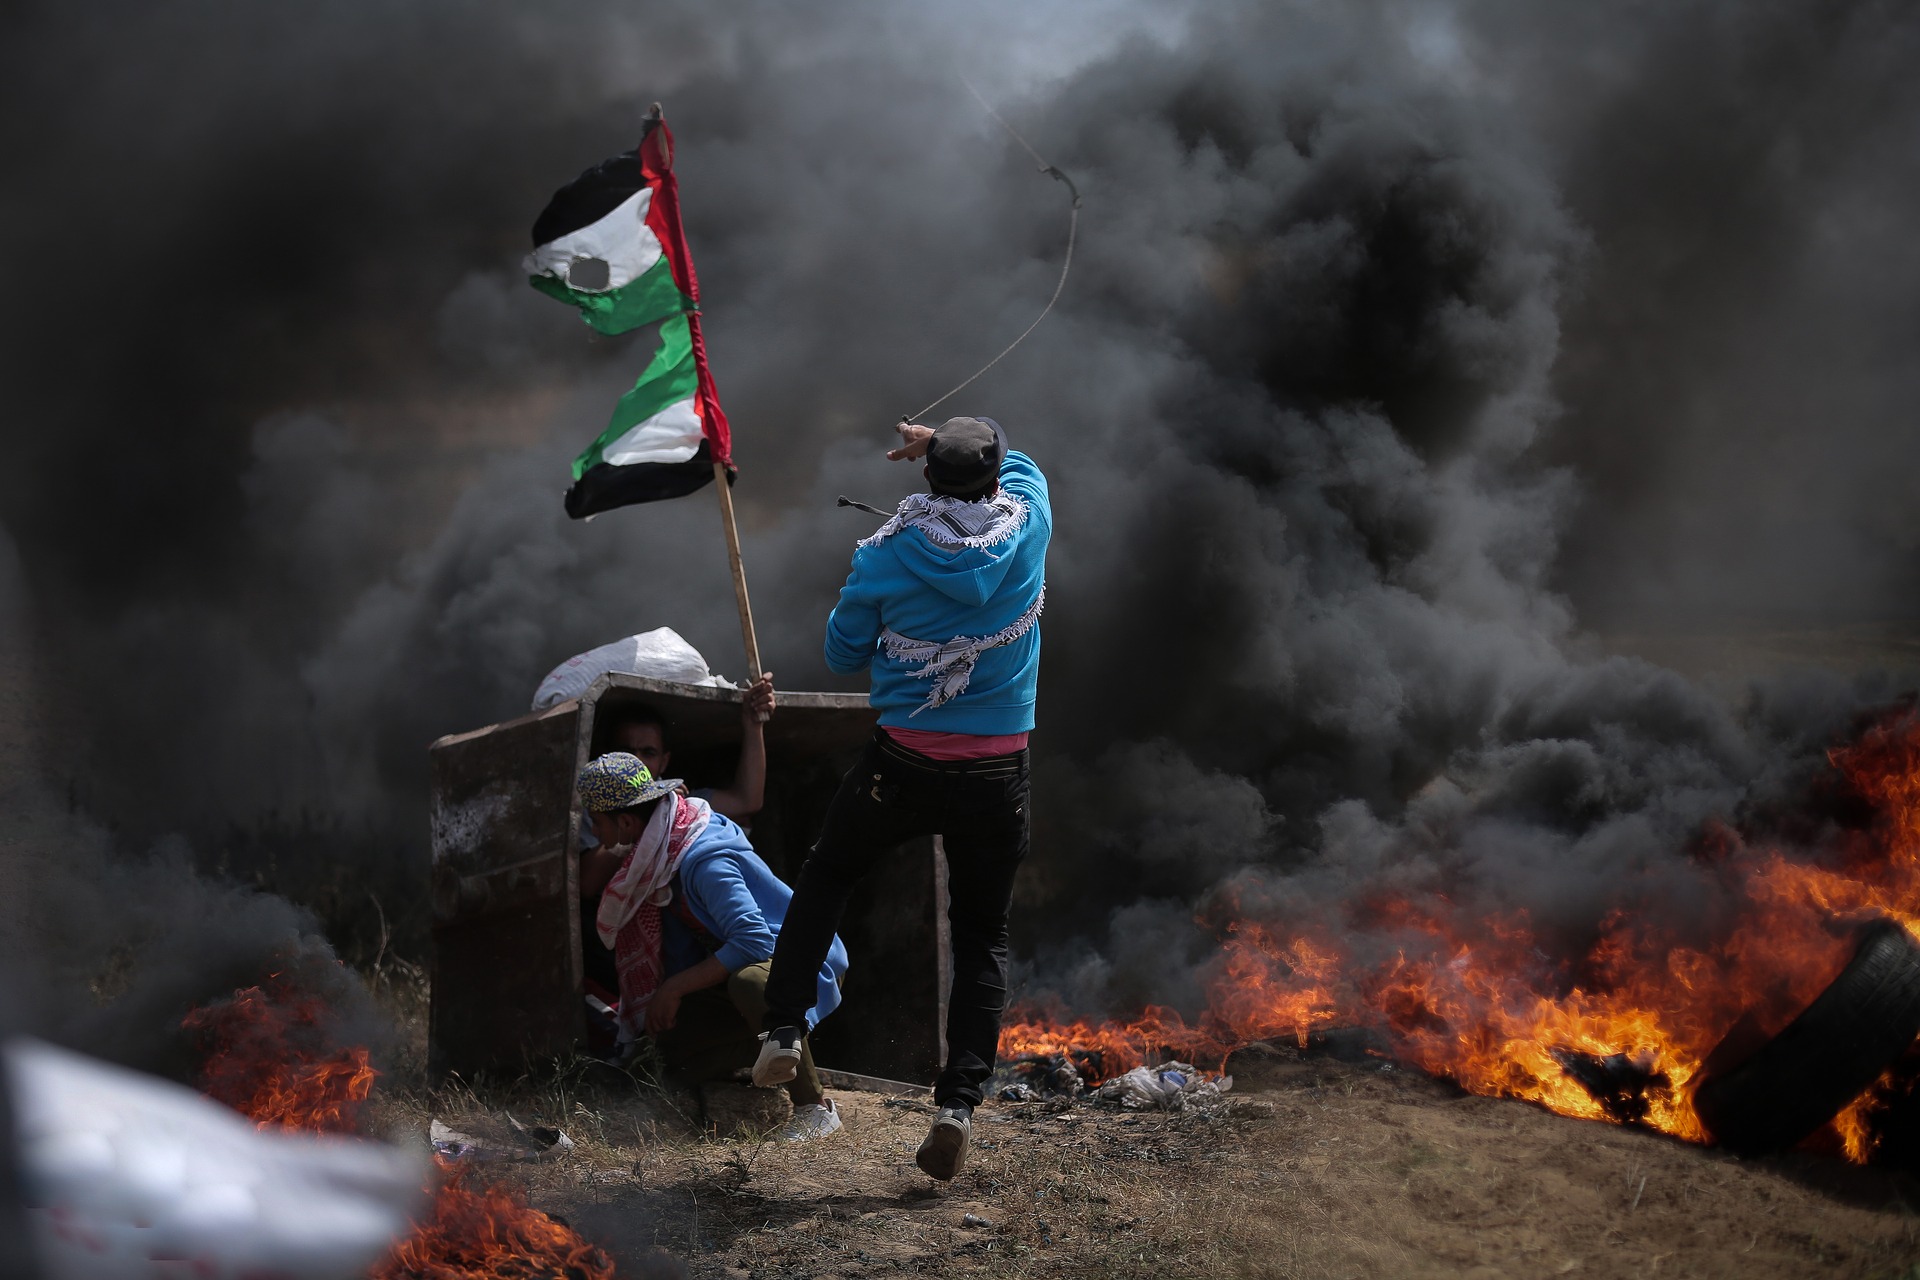 VANREDNA SJEDNICA UN: Sastanak Savjeta bezbjednosti zbog sukoba u Pojasu Gaze